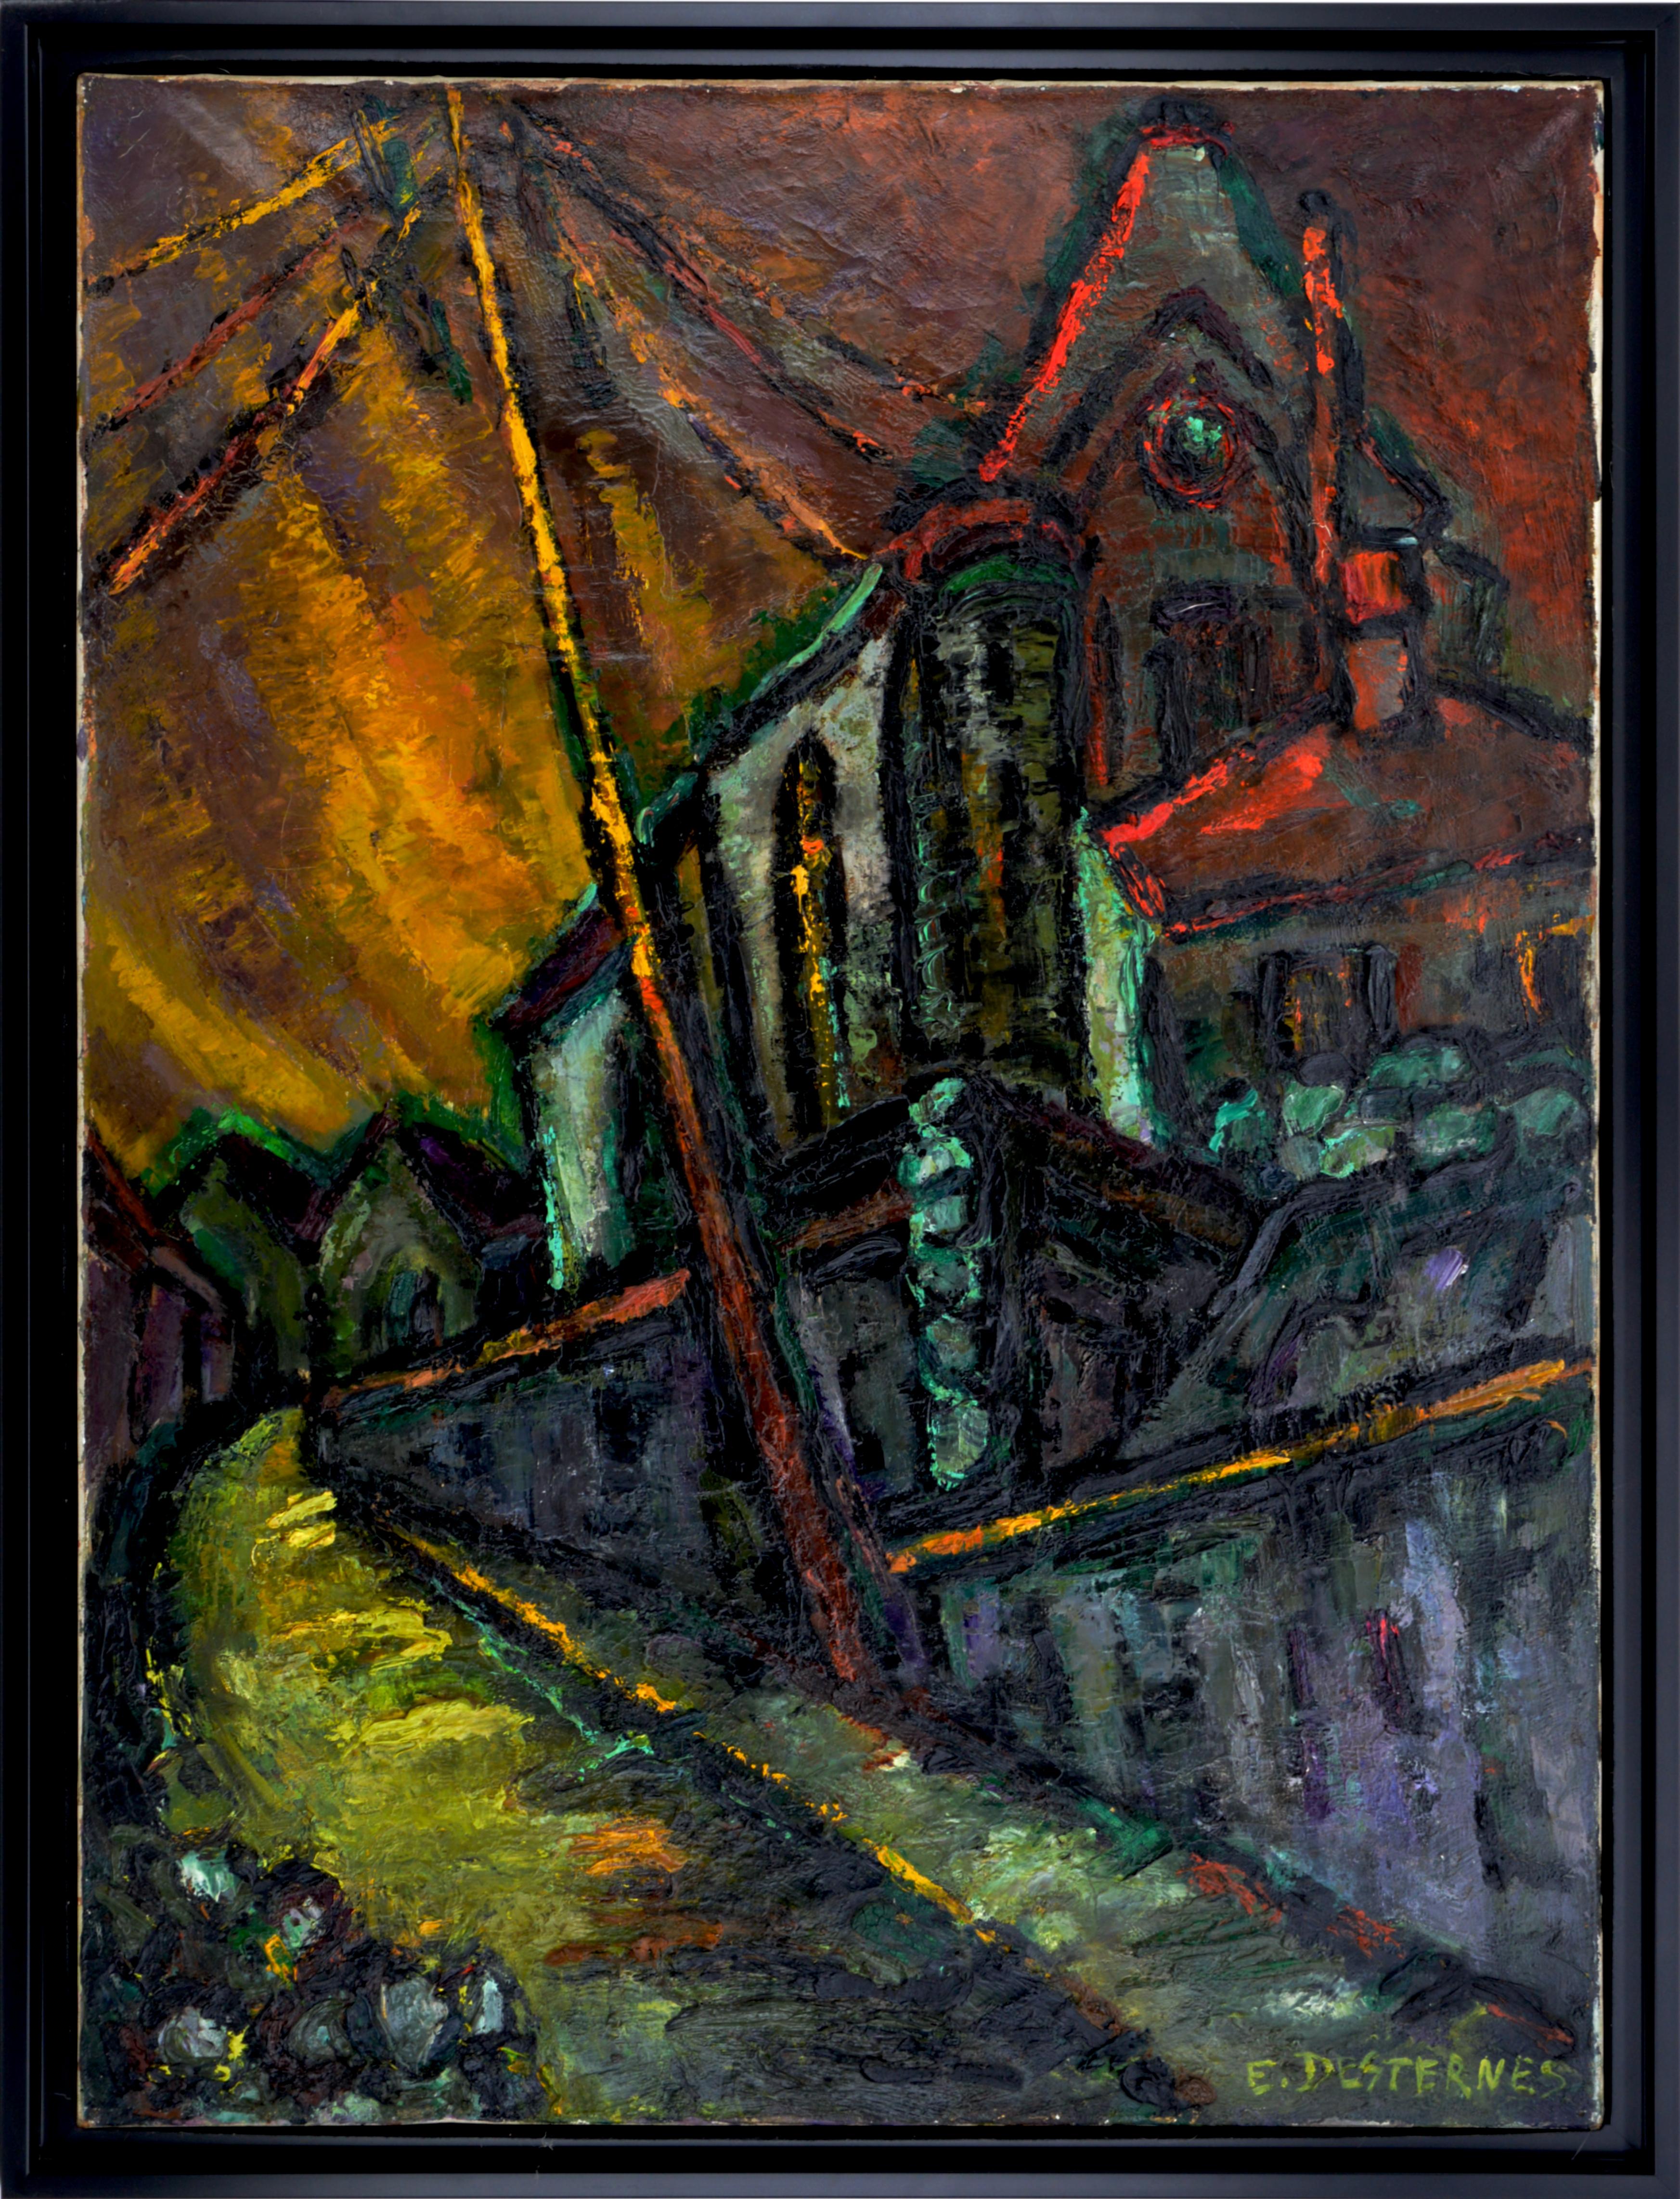 Öl auf Leinwand von Edith Desternes (1901-2000), Frankreich, 1920er Jahre. Die Kirche Notre-Dame de l'Assomption in Auvers-sur-Oise. Diese Kirche wurde im Jahr 1890 von Vincent van Gogh gemalt. Auf den ersten Blick fällt die Stärke dieses Werks auf.